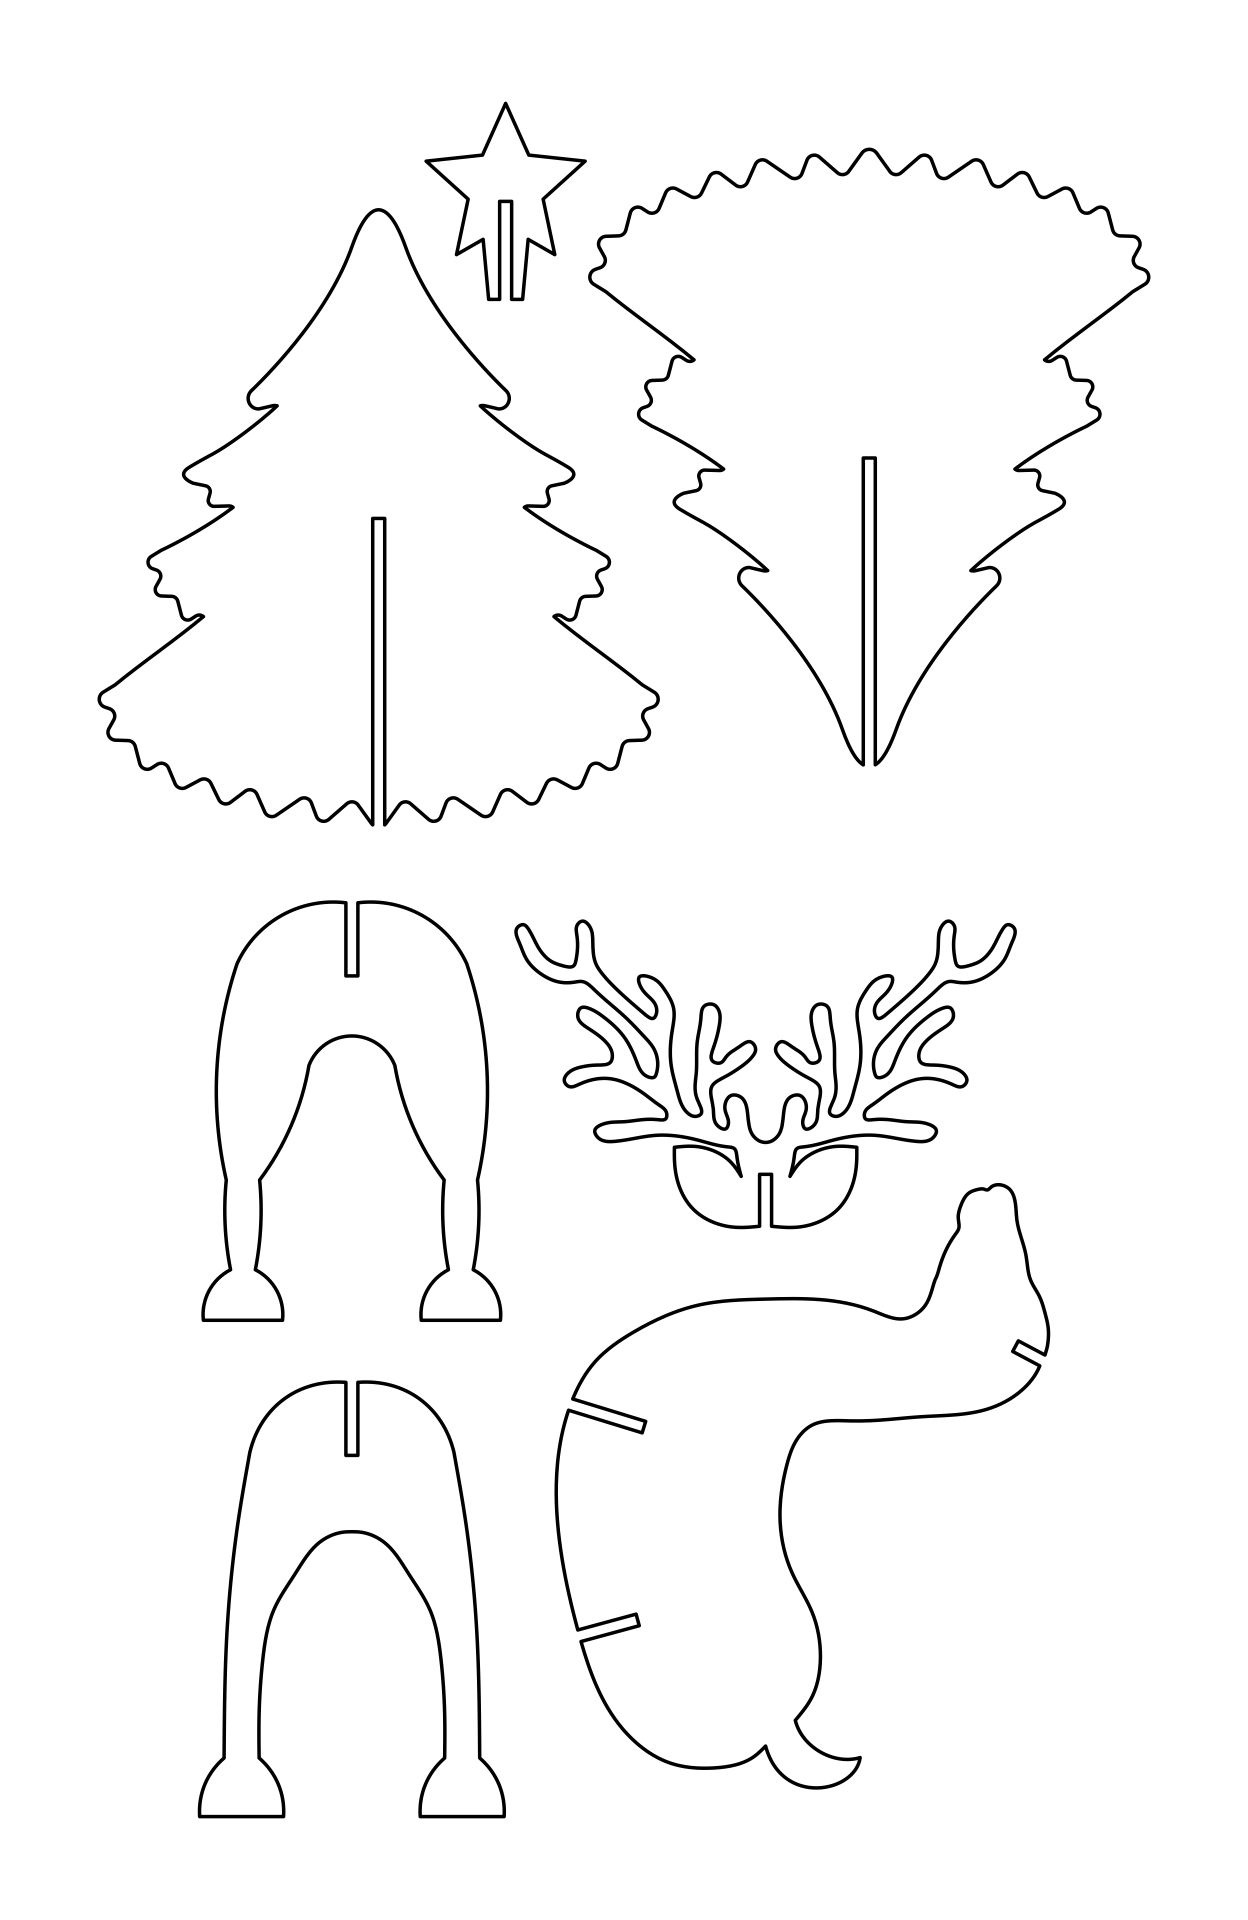 Printable 3D Reindeer & Christmas Tree Cardboard Animal Template